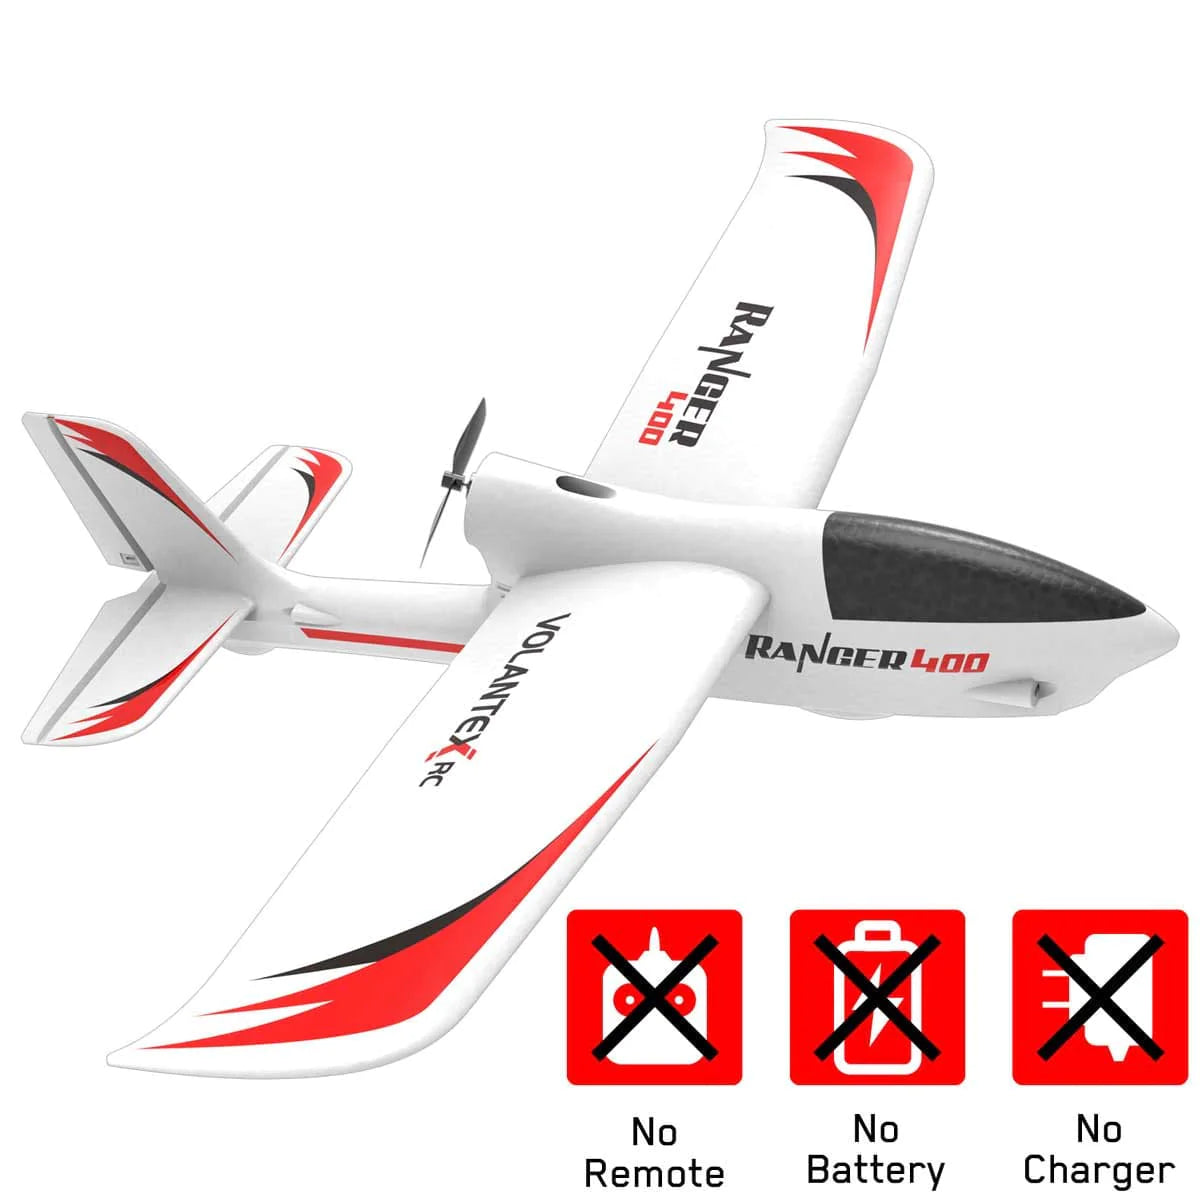 VOLANTEXRC Ranger 400 RC Trainer Avion avec Xpilot 6-AXIS Gyro System facile à piloter pour les débutants park flyer rc glider (761-6) RTF